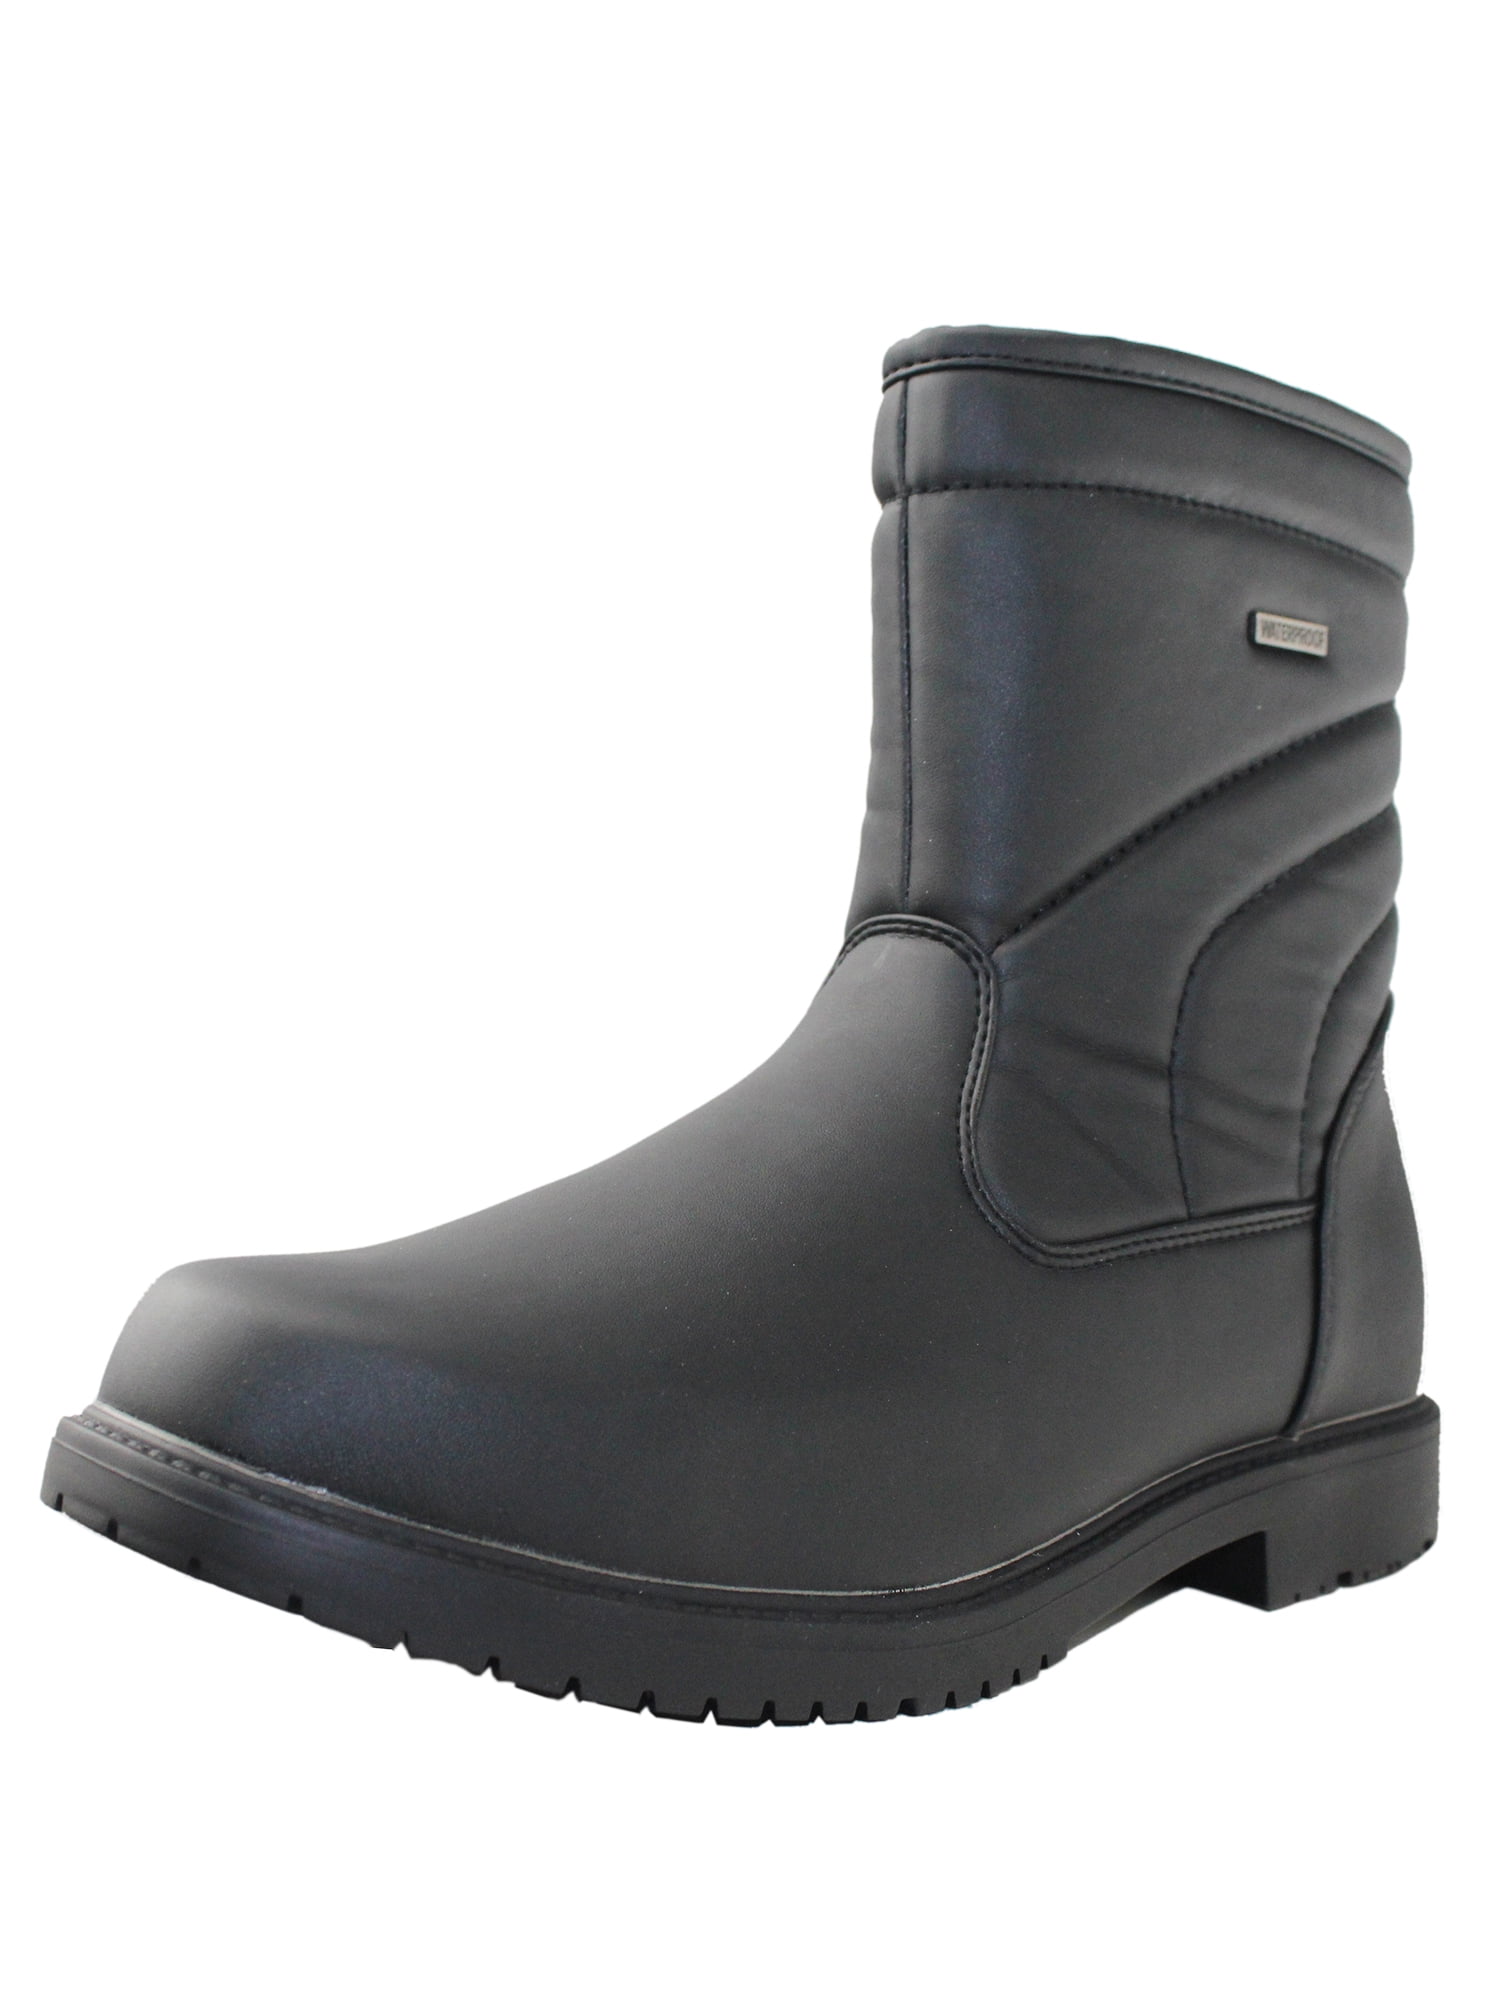 OwnShoe Mens Winter Warm Snow Boots Waterproof Side Zipper Full Faux ...